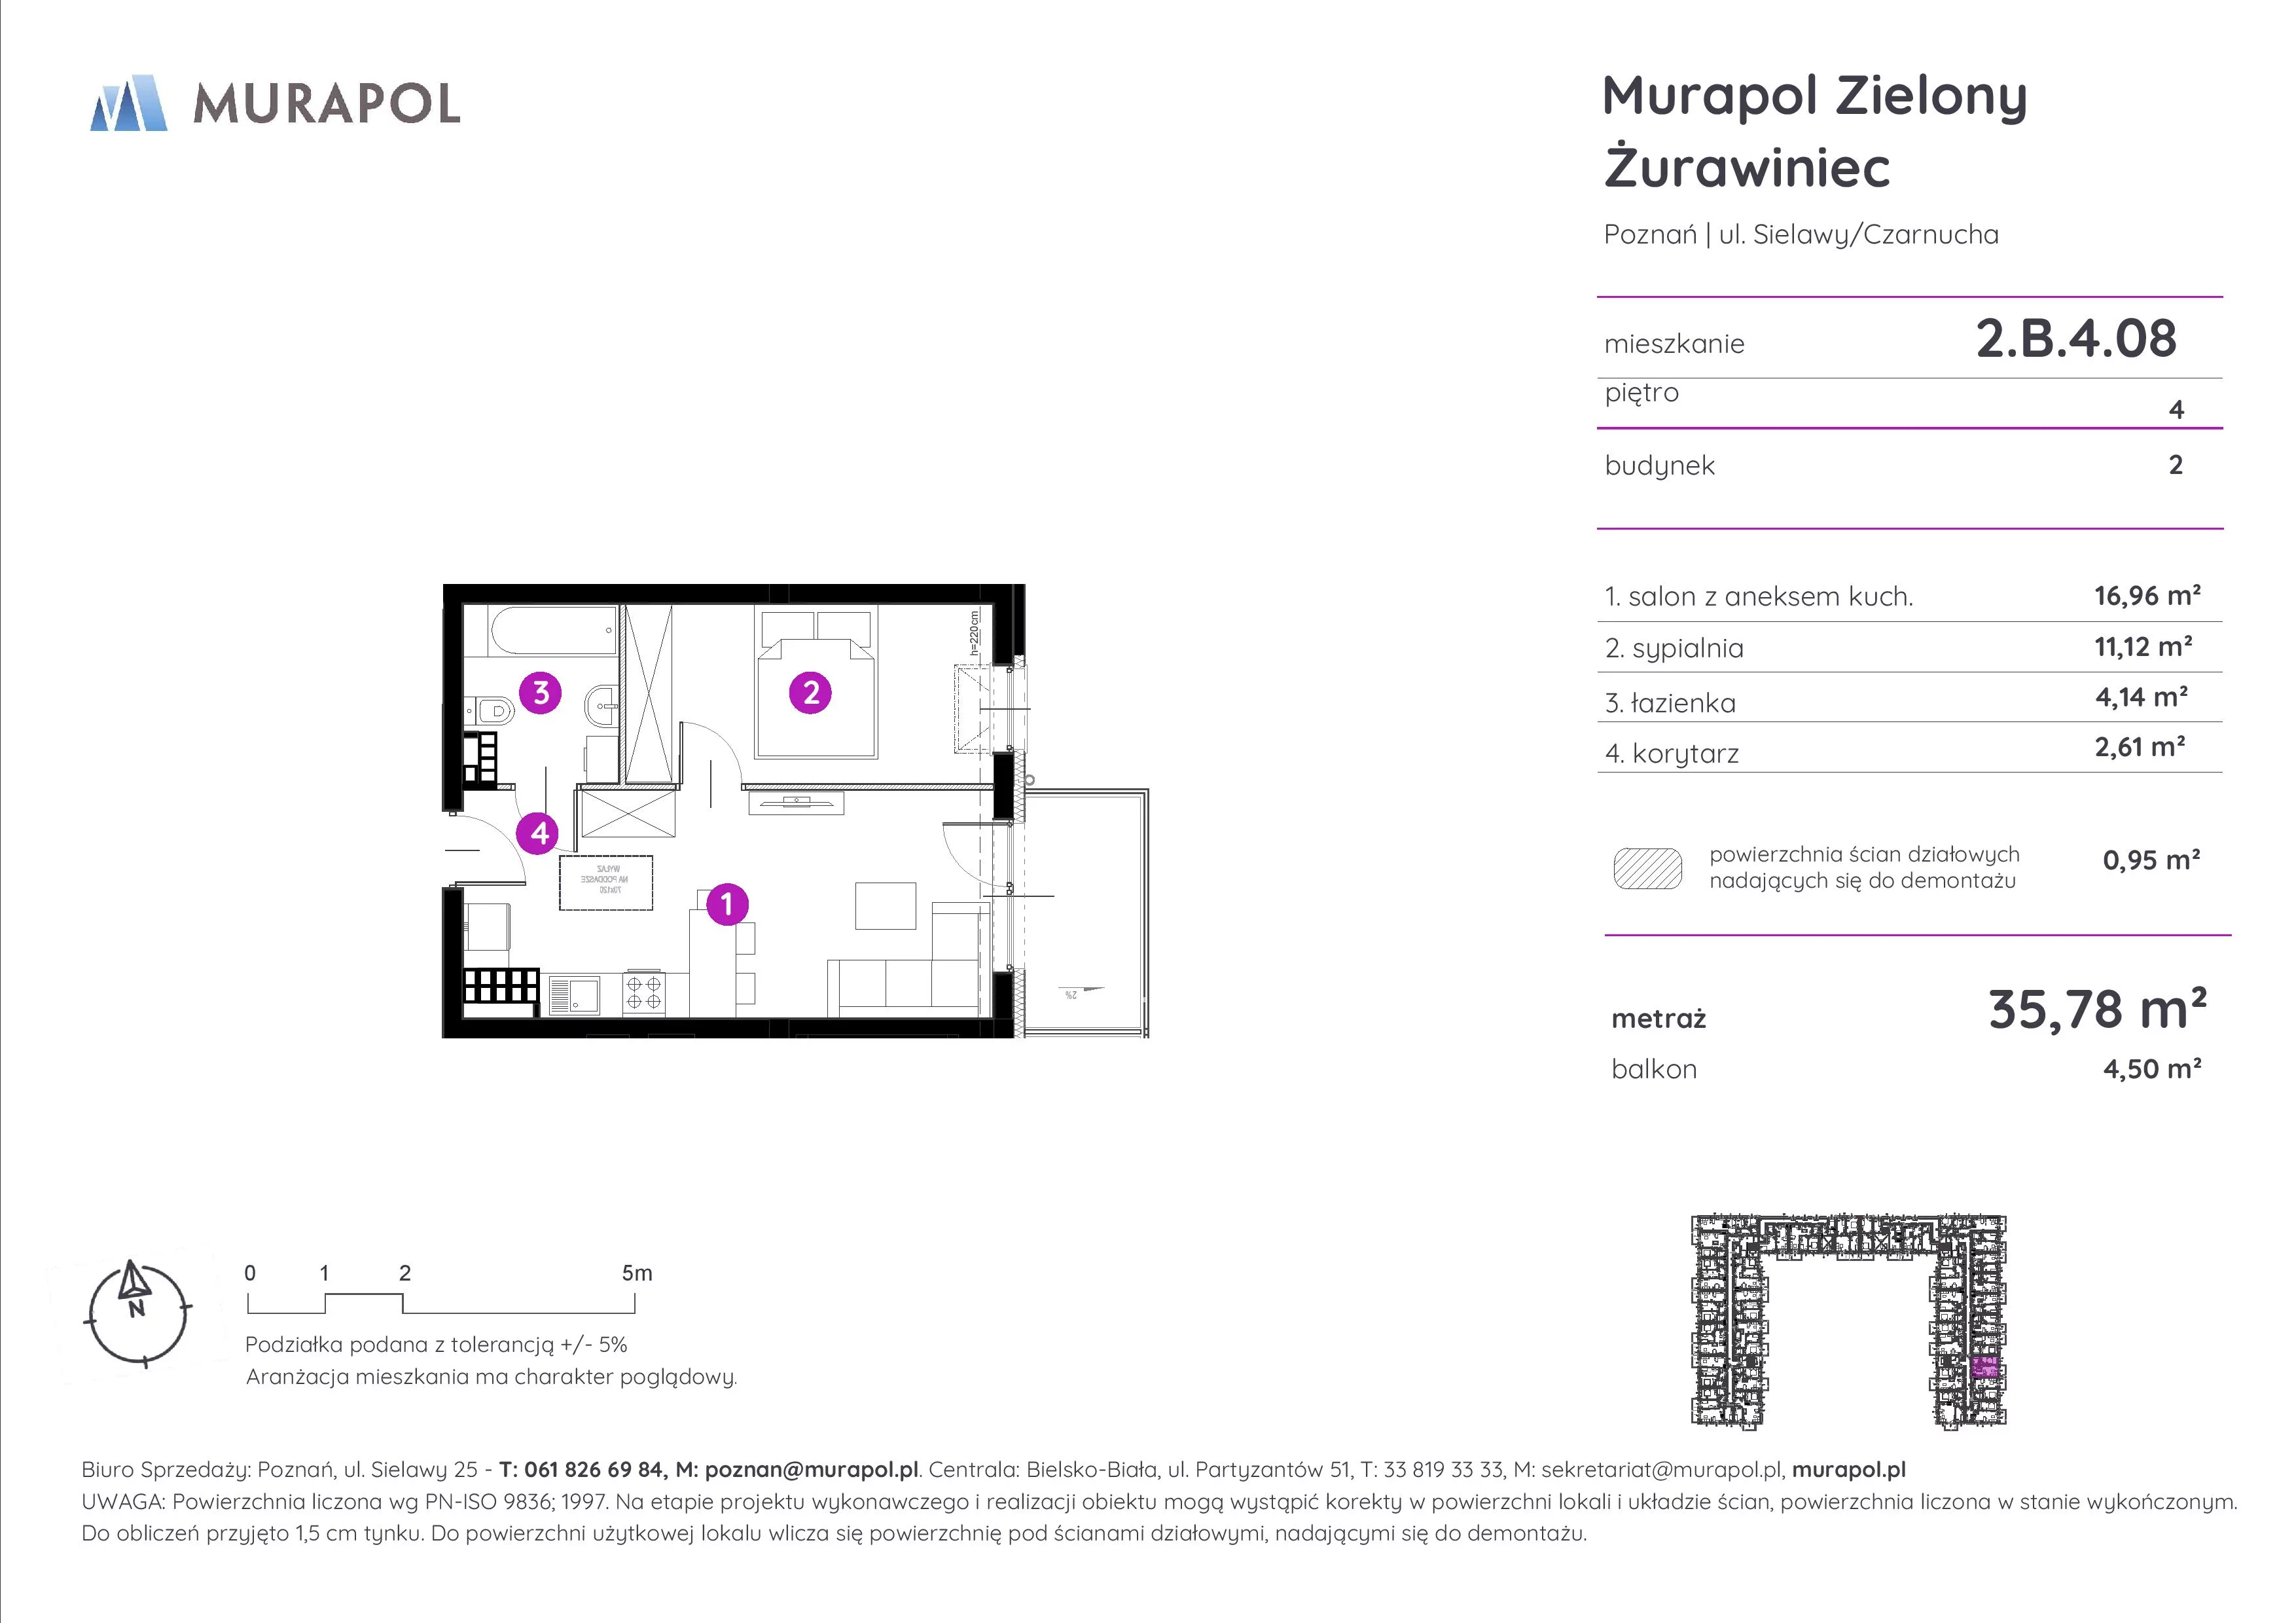 Mieszkanie 35,78 m², piętro 4, oferta nr 2.B.4.08, Murapol Zielony Żurawiniec, Poznań, Naramowice, ul. Sielawy